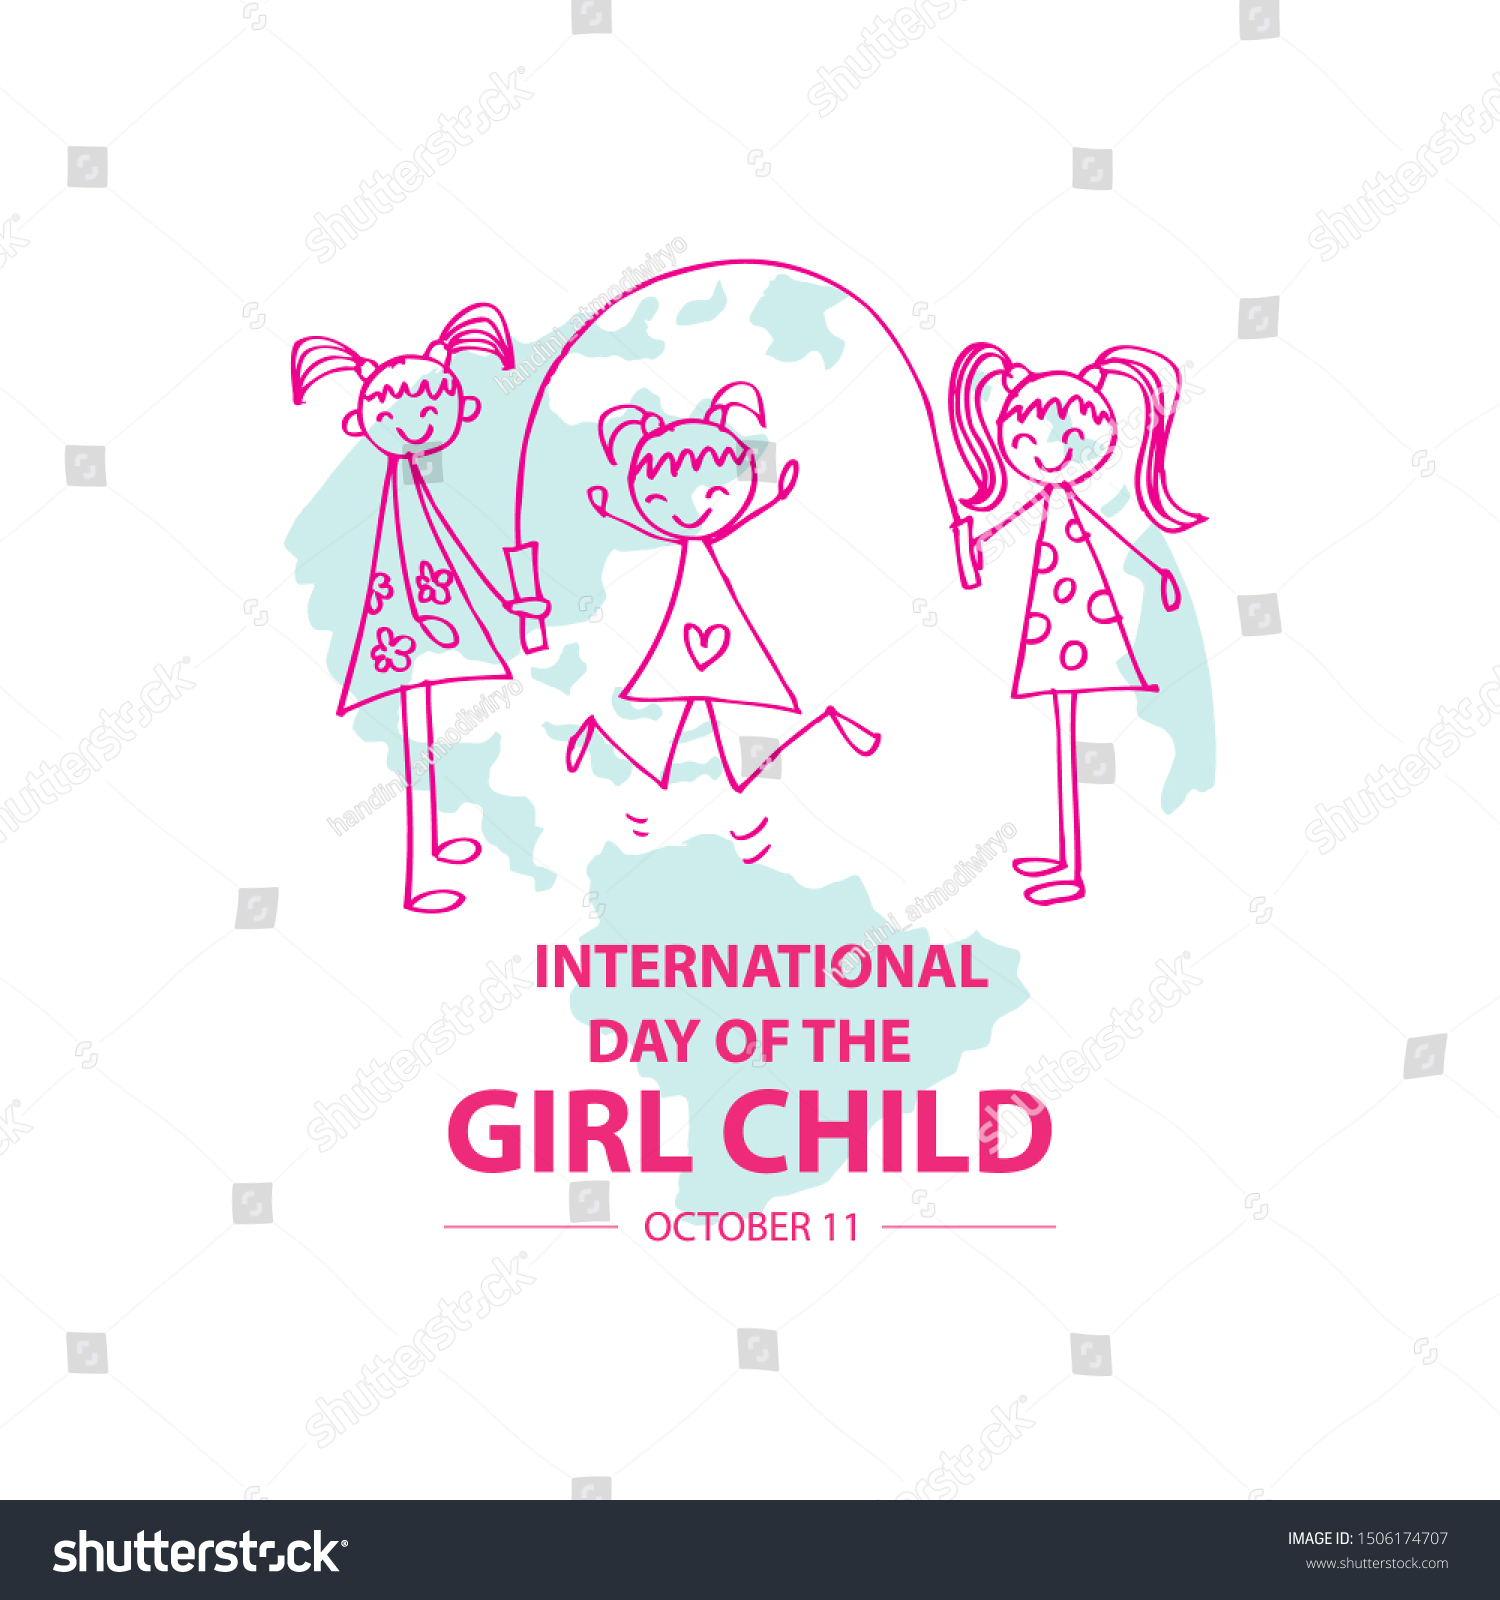 сегодня международный день девочек картинки